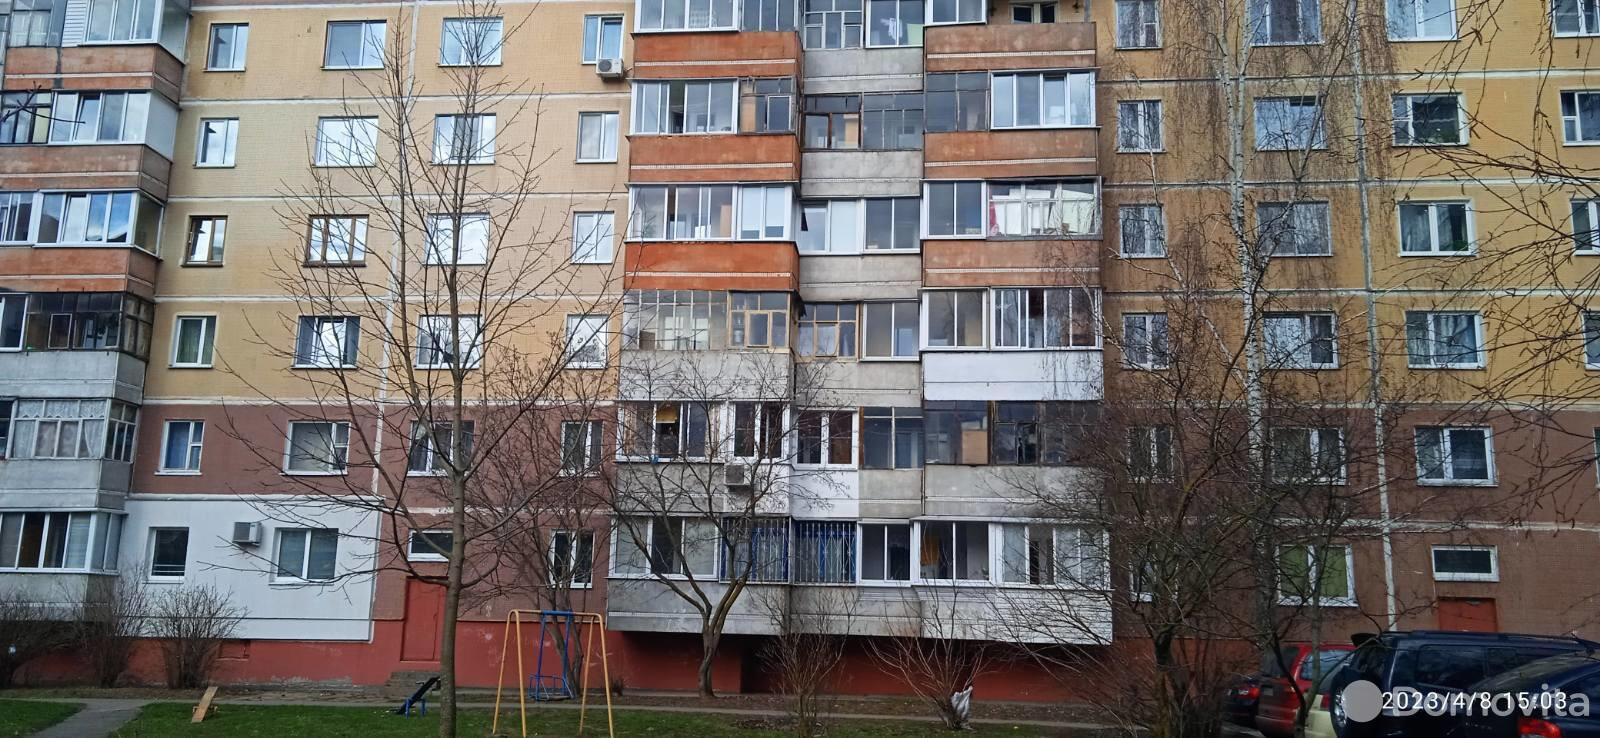 квартира, Витебск, ул. Чкалова, д. 41 К1 от собственника